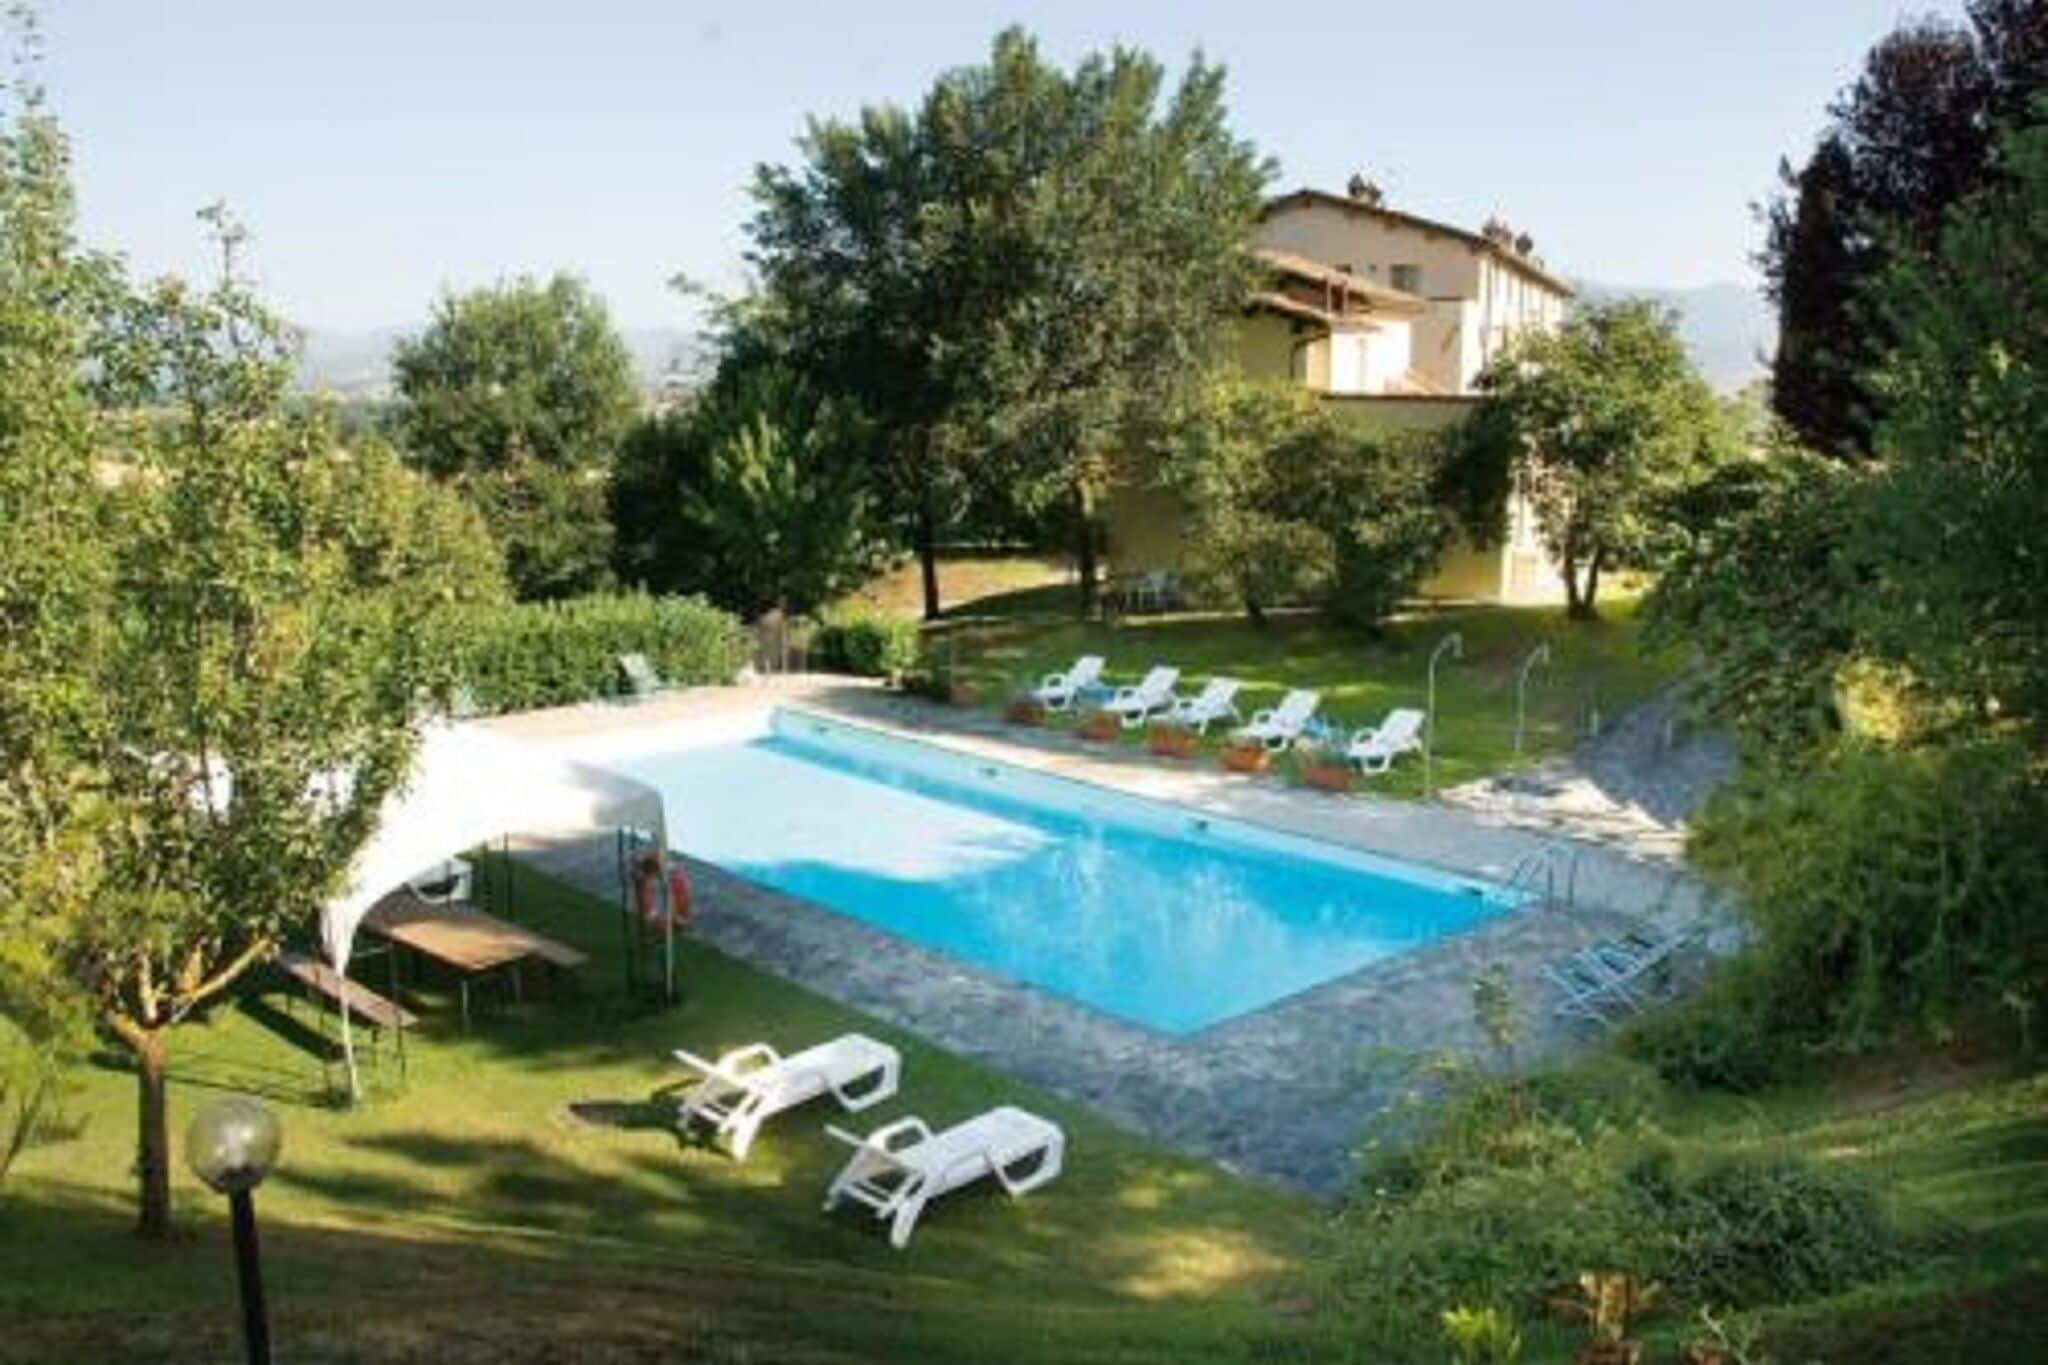 Scenic apartment in Città di Castello with shared pool